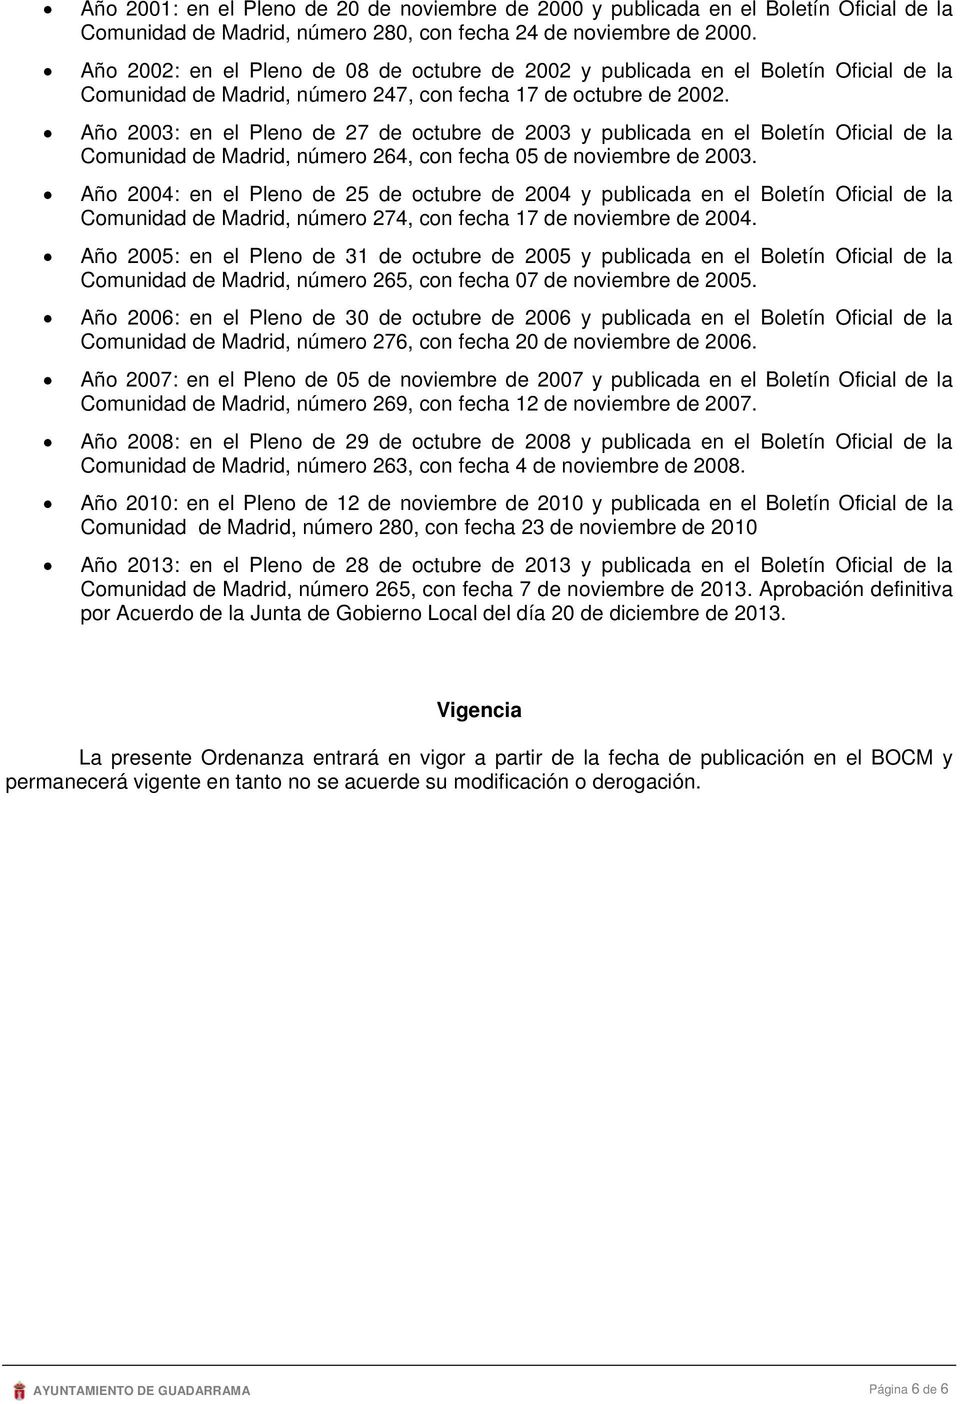 Año 2003: en el Pleno de 27 de octubre de 2003 y publicada en el Boletín Oficial de la Comunidad de Madrid, número 264, con fecha 05 de noviembre de 2003.